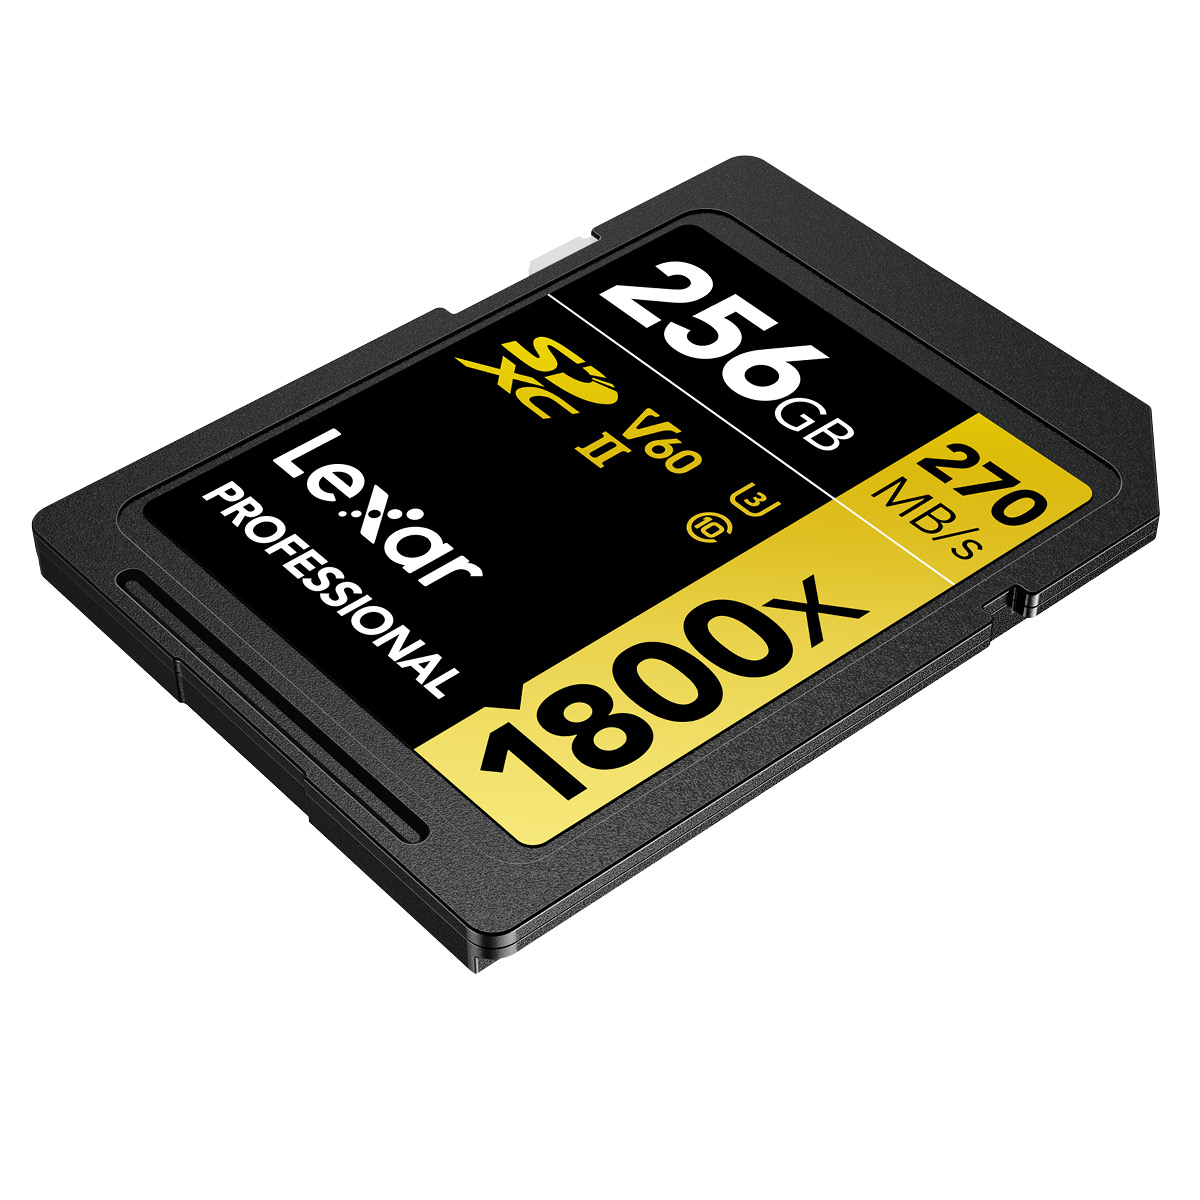 Lexar 256 GB SDXC 1800x